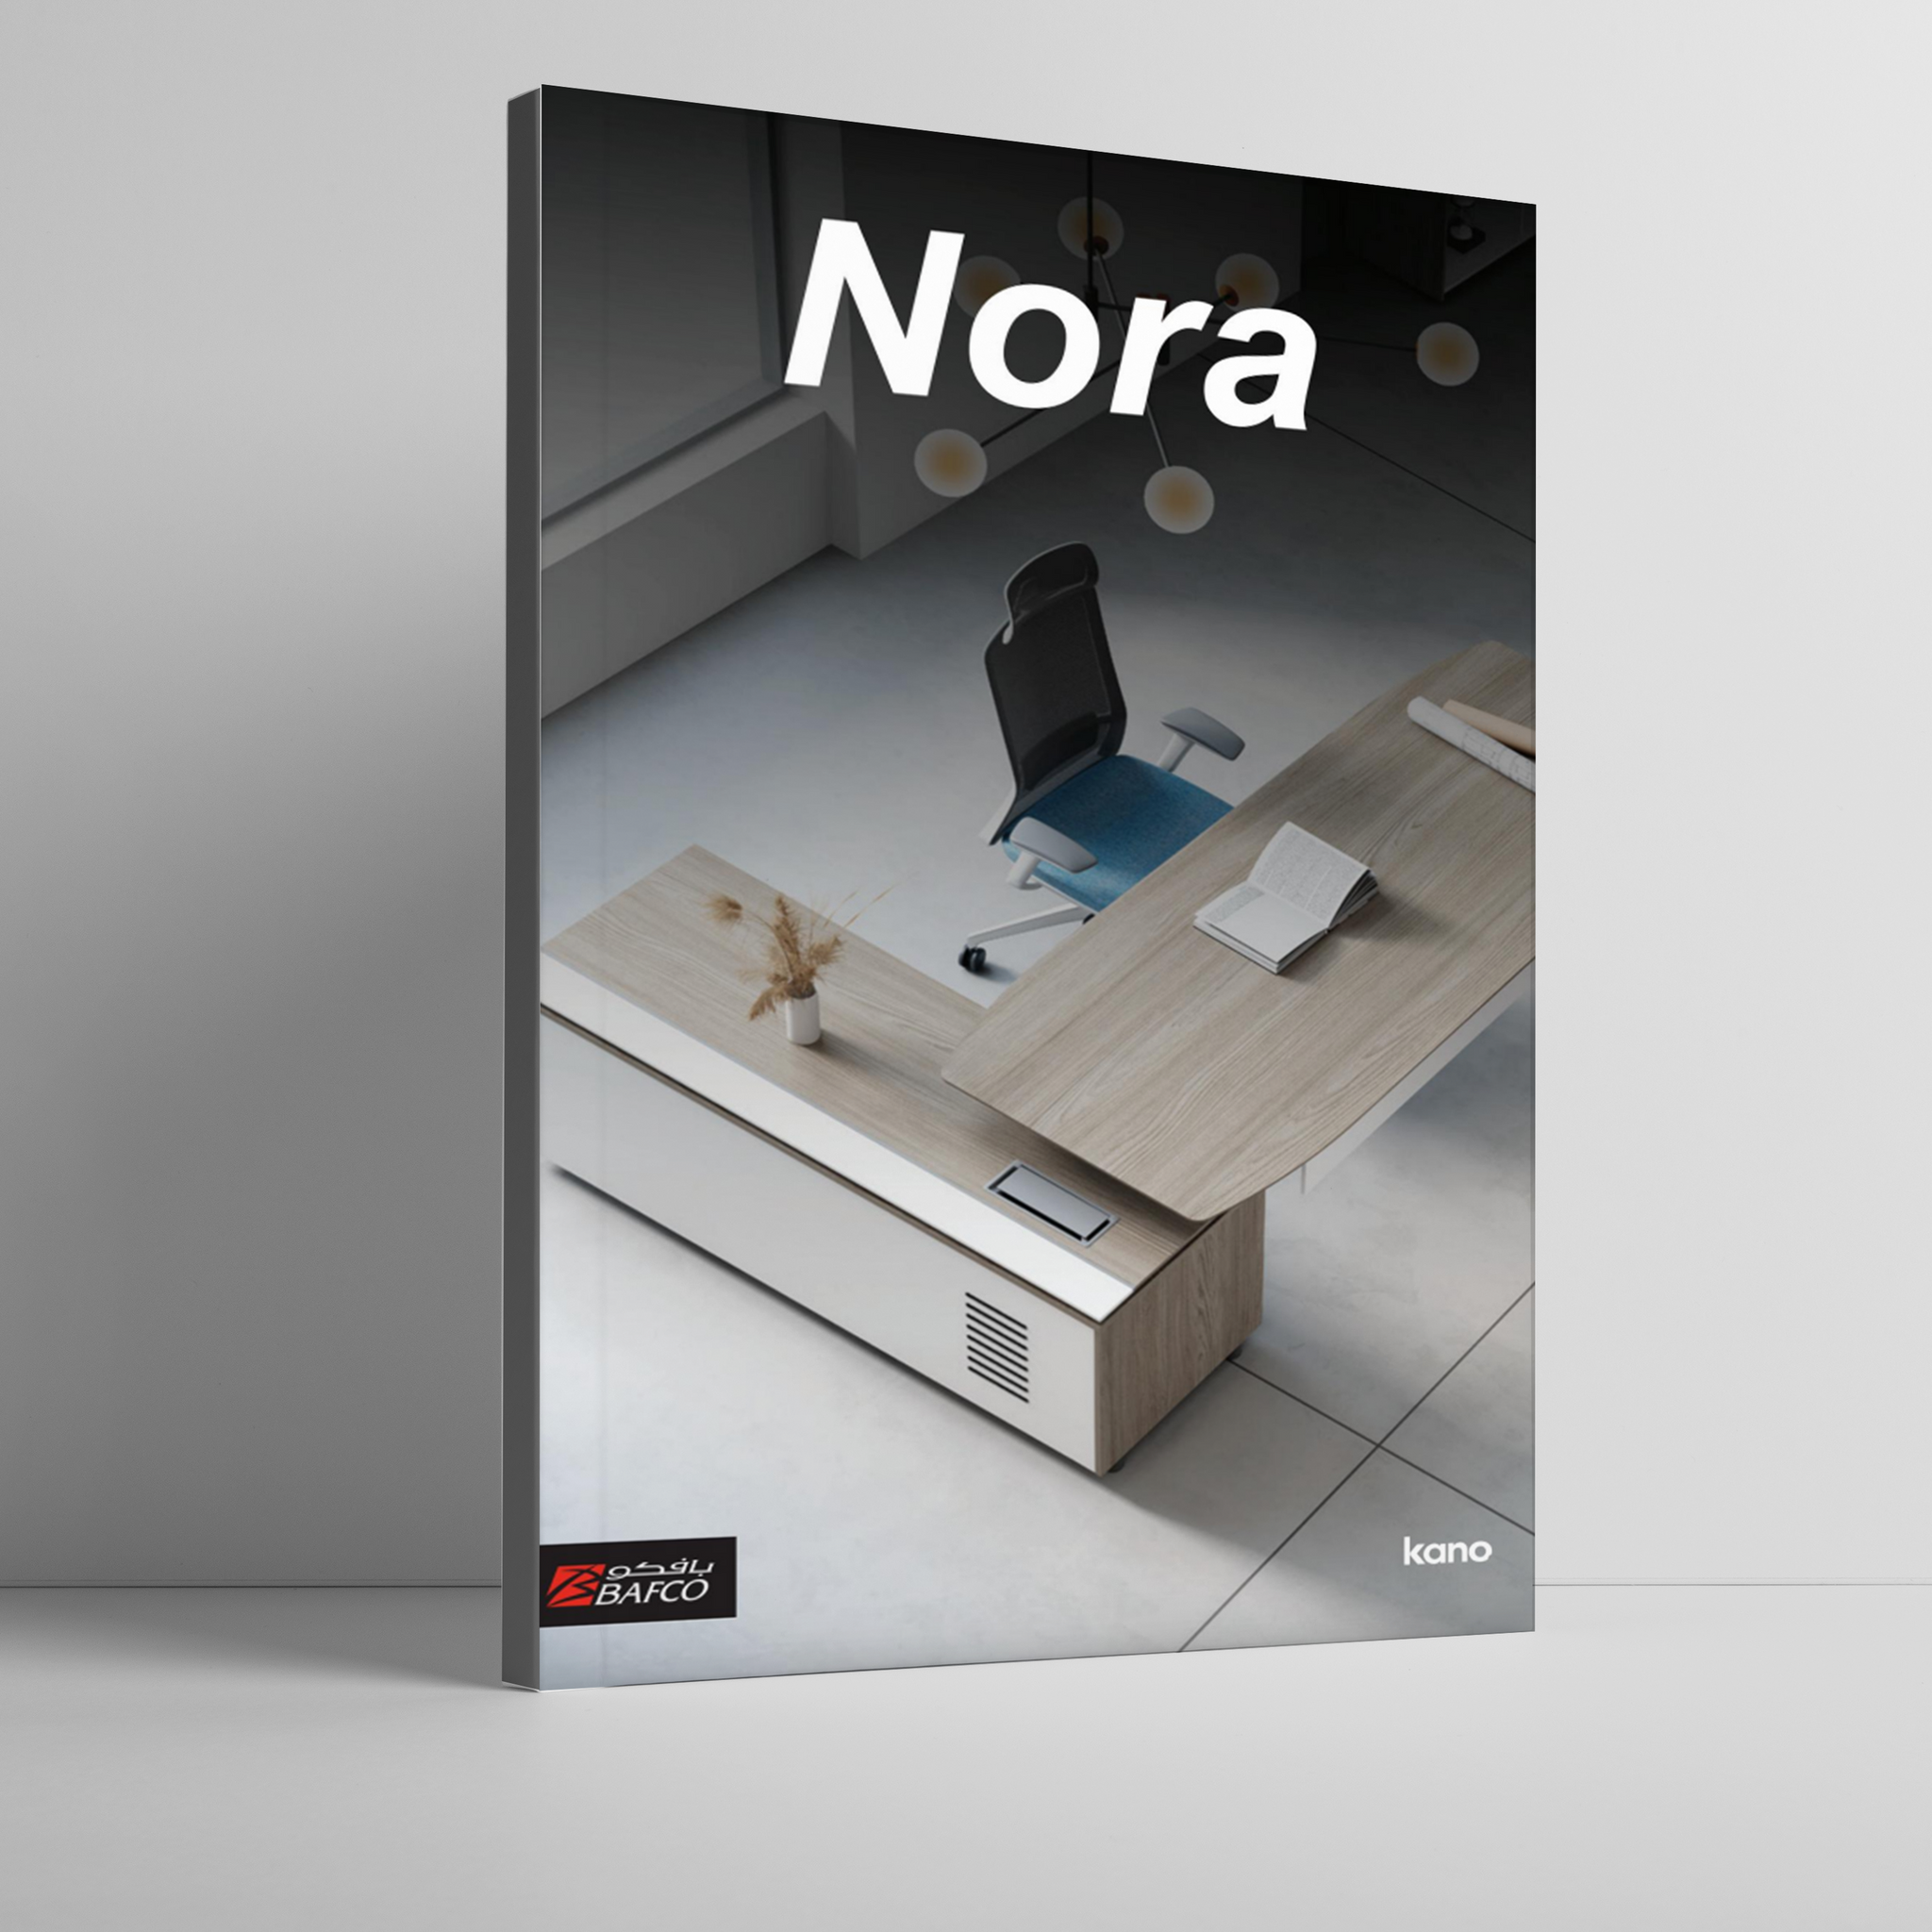 Nora Workstation Brochure (35MB)